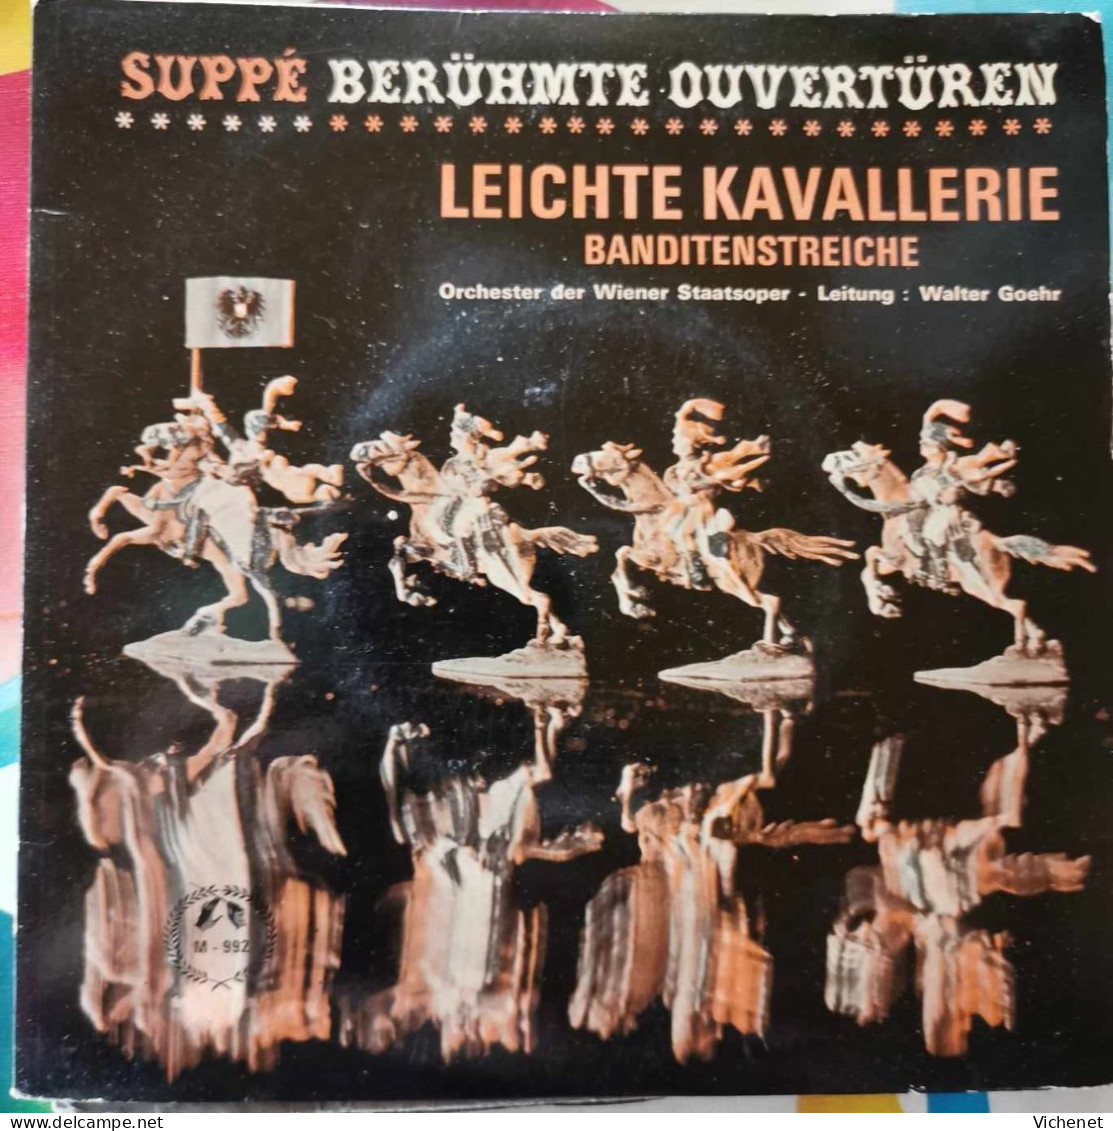 Suppé – Berühmte Ouvertüren - Leichte Kavallerie / Banditenstreiche -  45T - Klassik